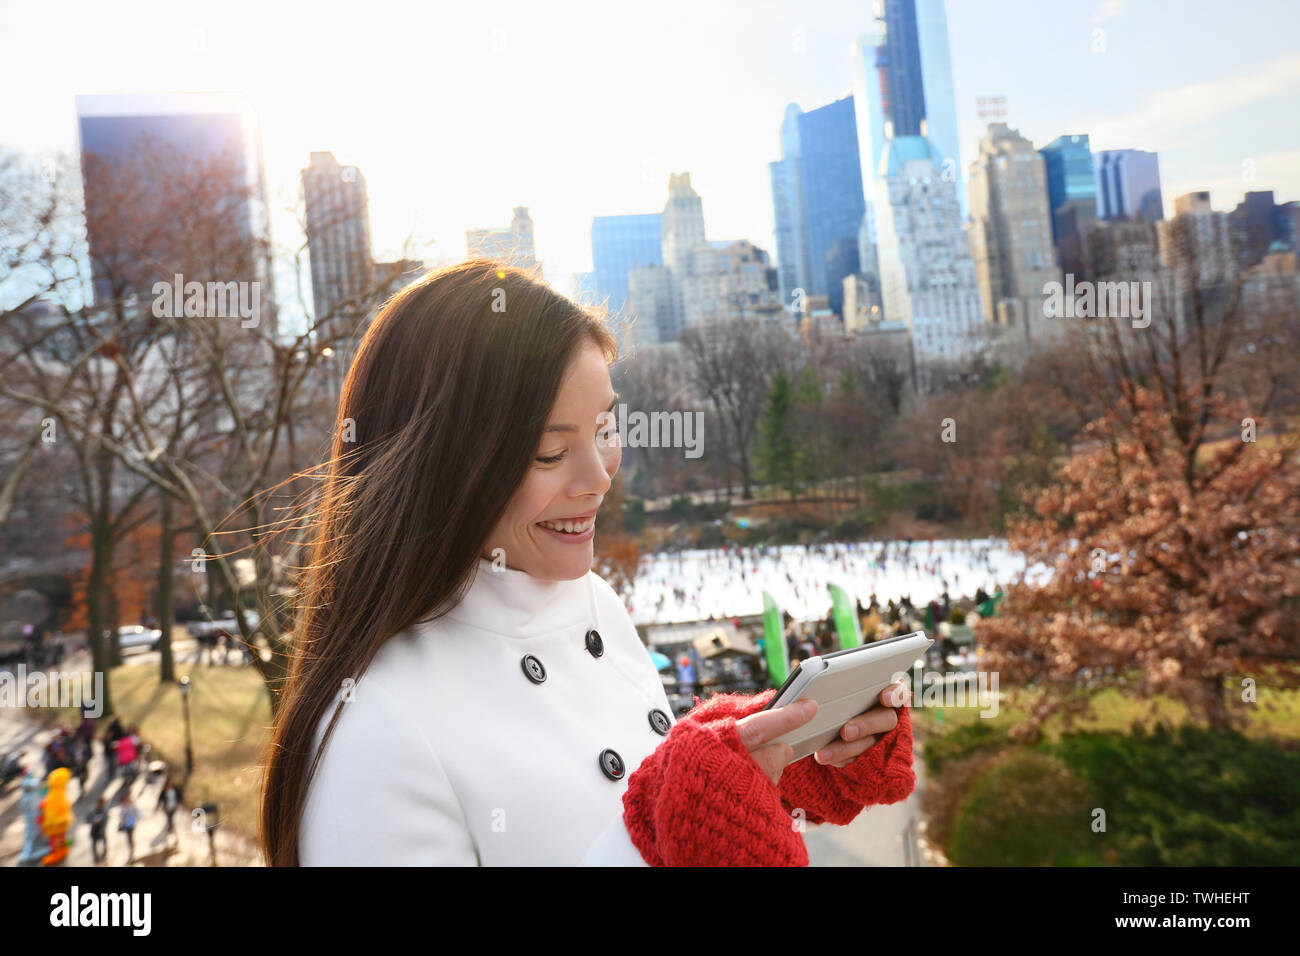 Frau auf Tablet-Smartphone im Central Park, New York City in den späten Herbst Winter mit Eisbahn im Hintergrund. Offenes Lächeln, multi-ethnischen Mädchen auf Manhattan, USA. Stockfoto